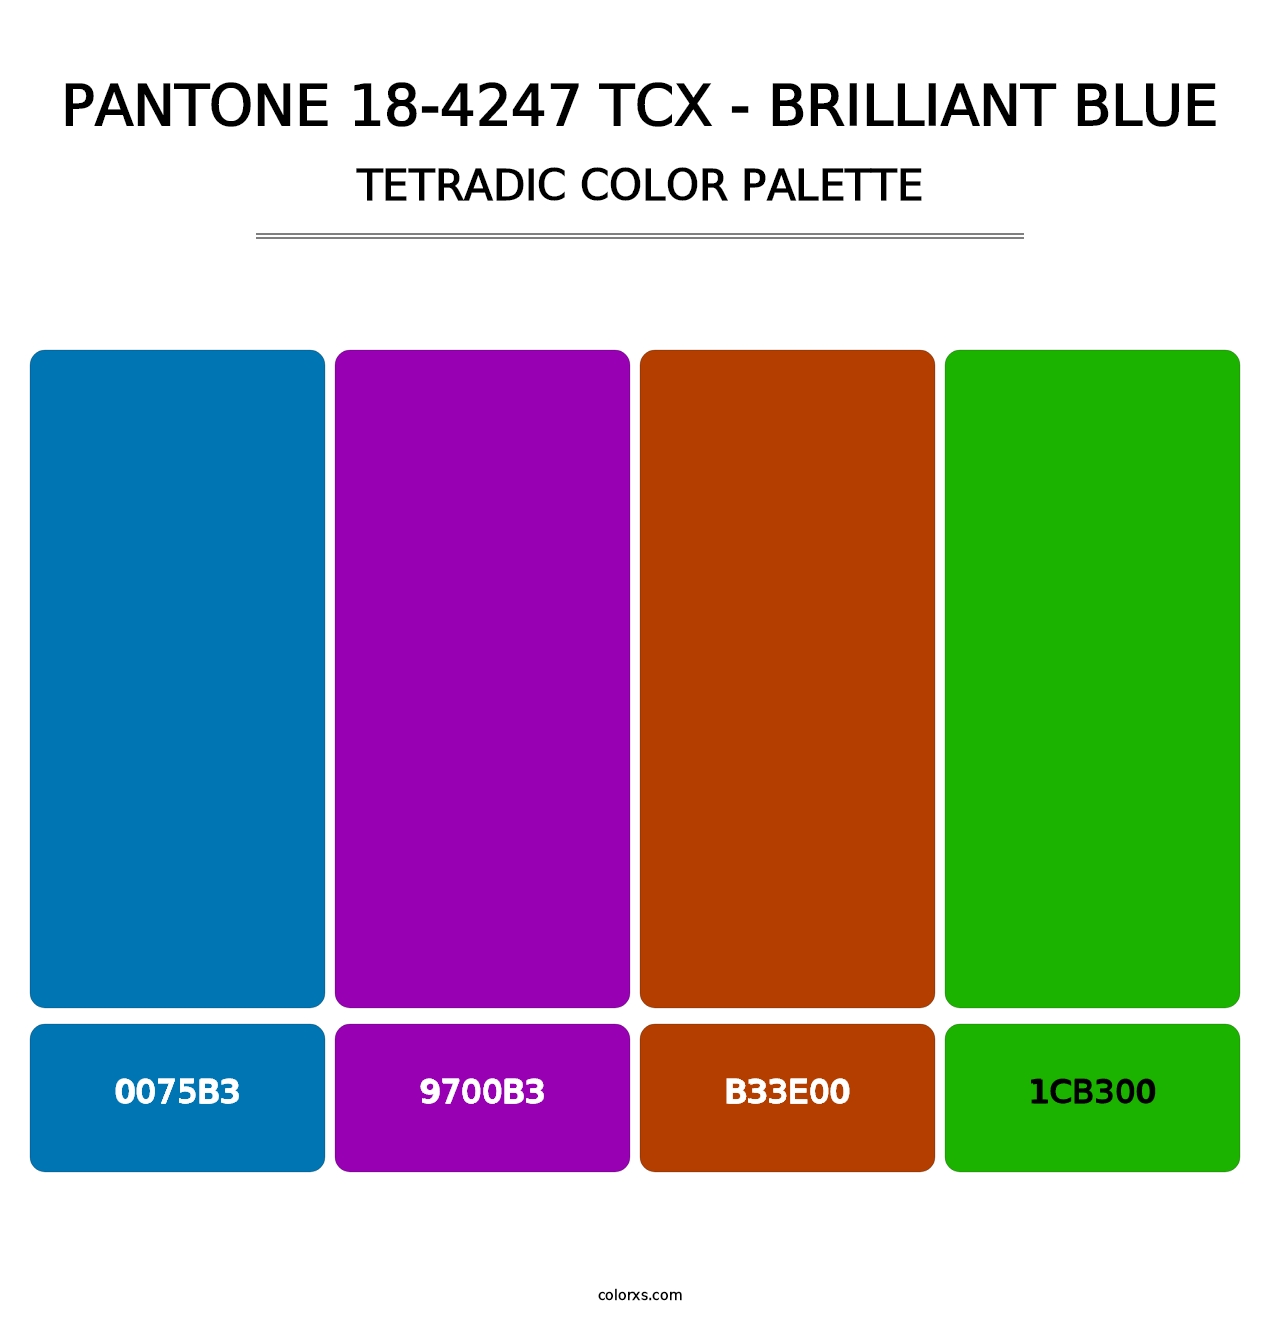 PANTONE 18-4247 TCX - Brilliant Blue - Tetradic Color Palette